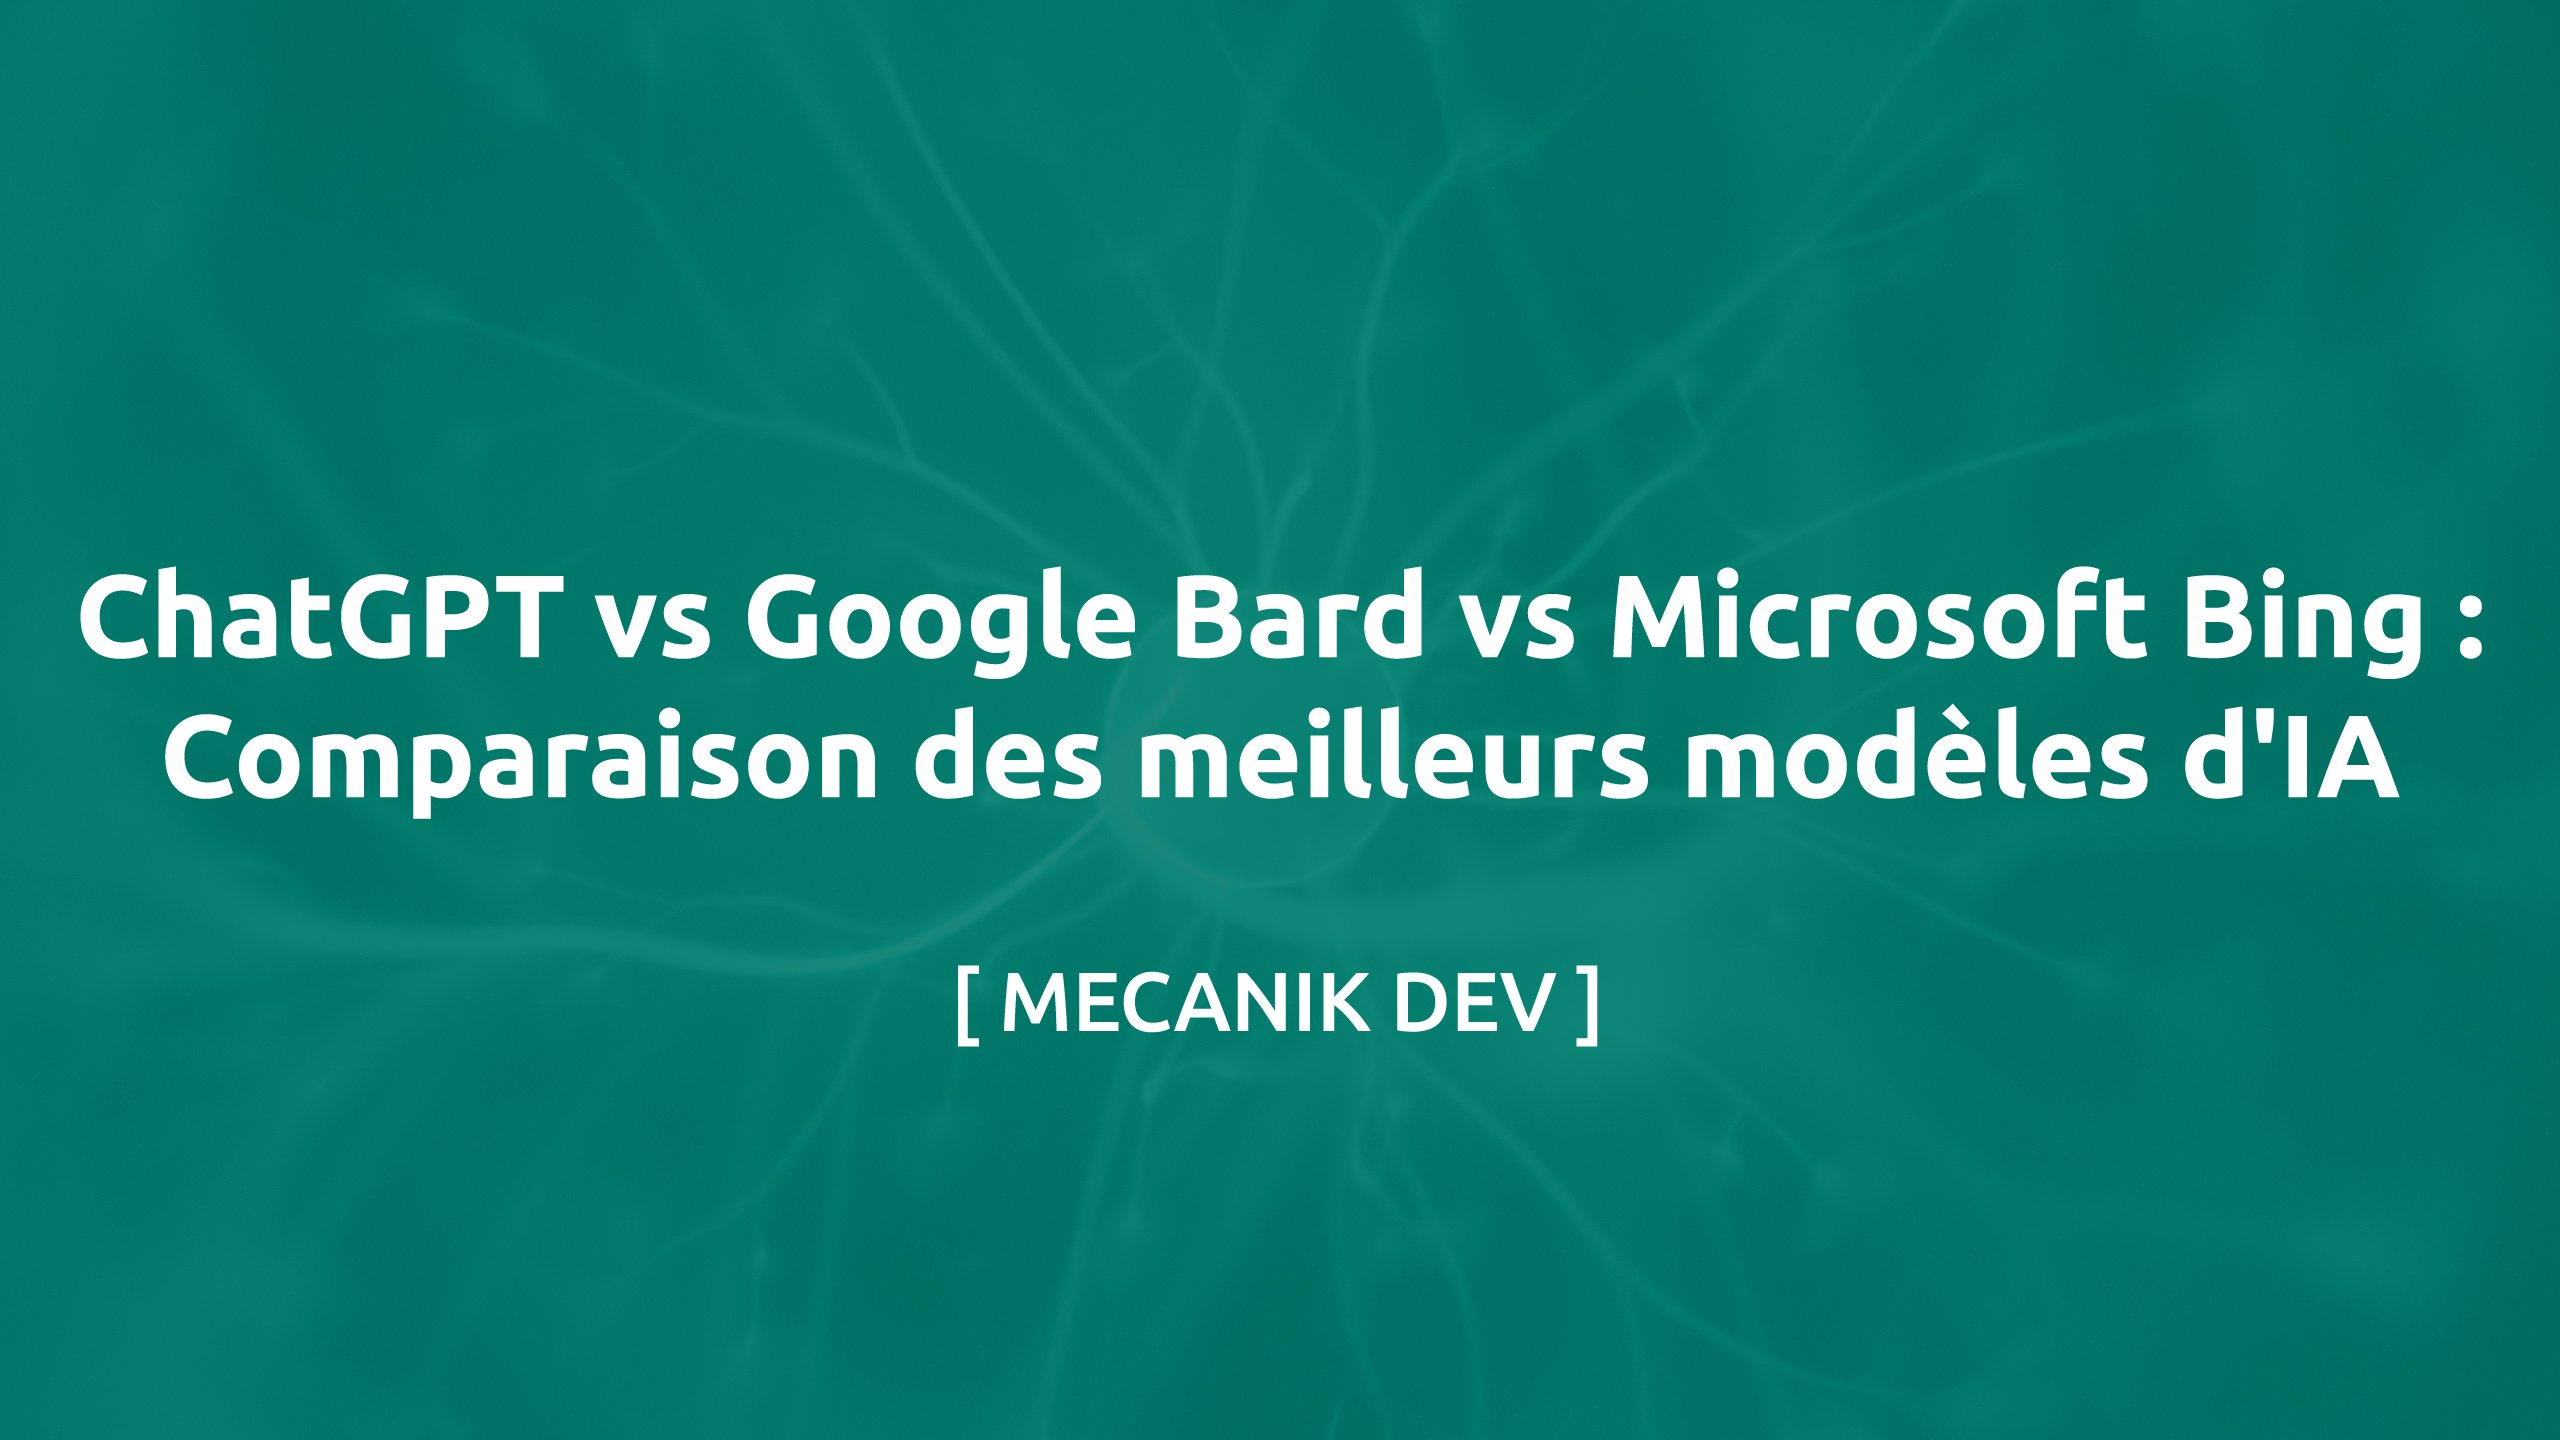 ChatGPT vs Google Bard vs Microsoft Bing: Comparaison des meilleurs modèles d'IA